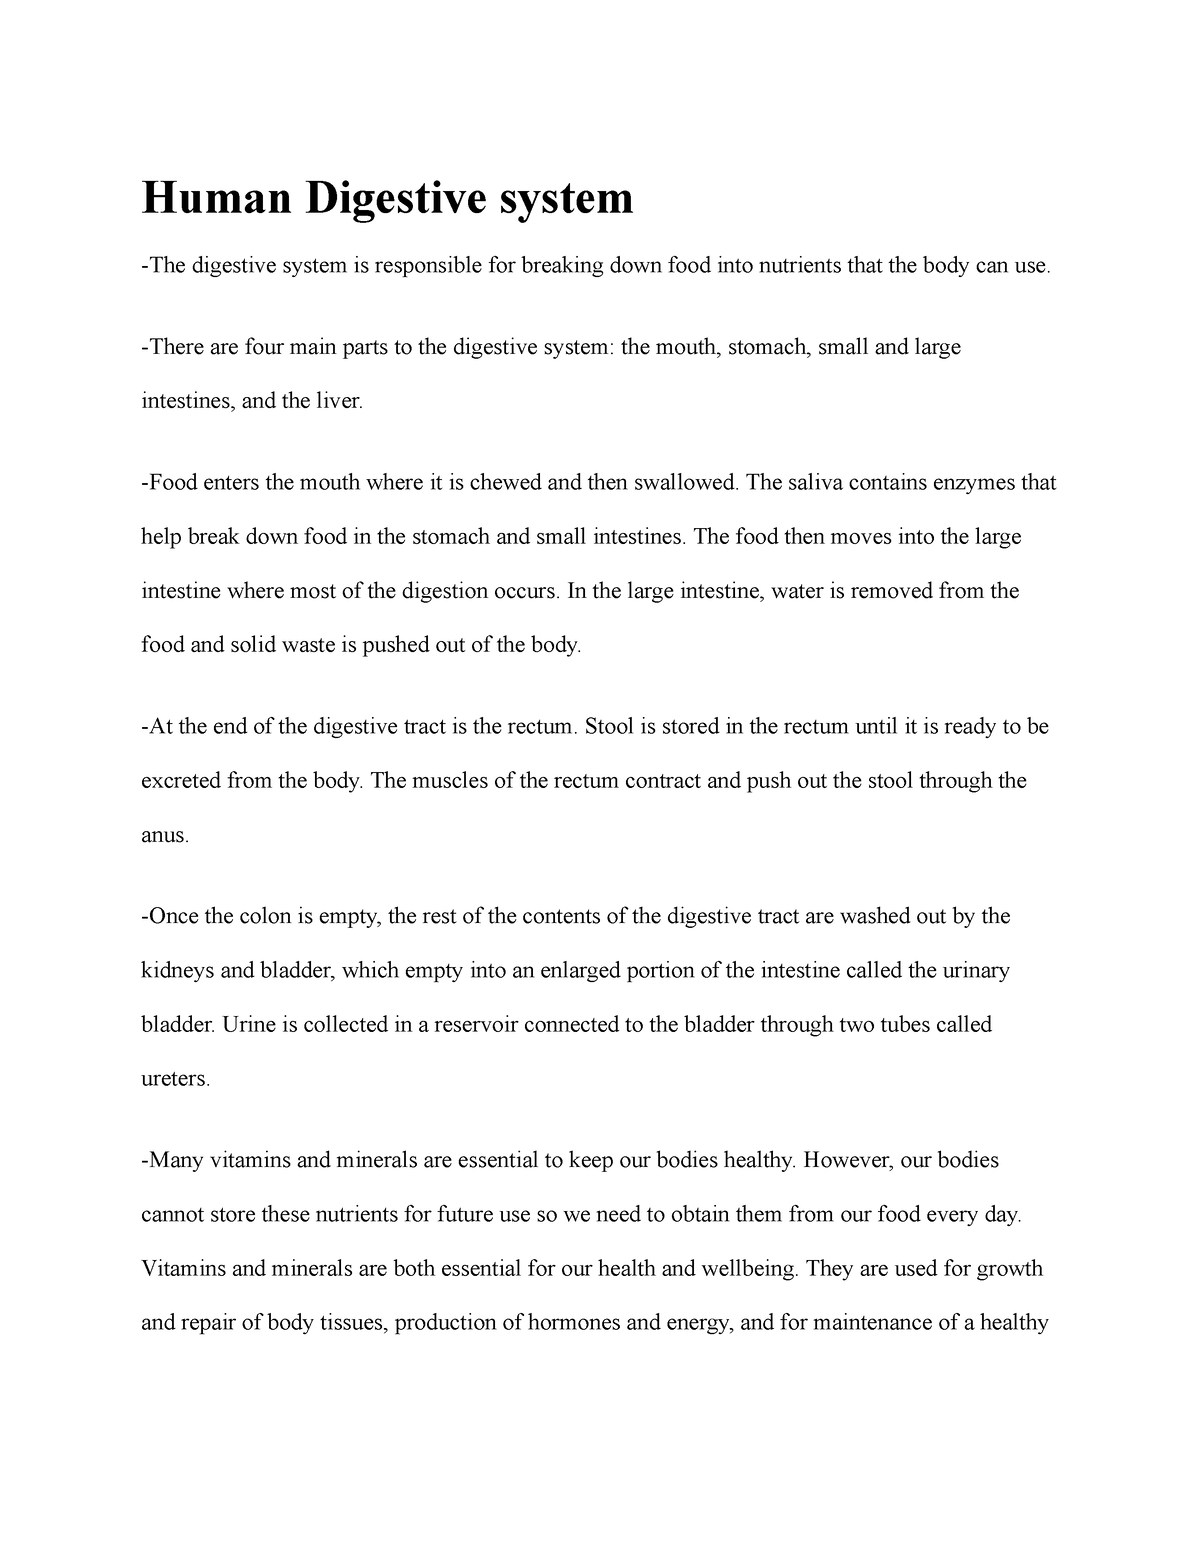 human digestive system essay pdf